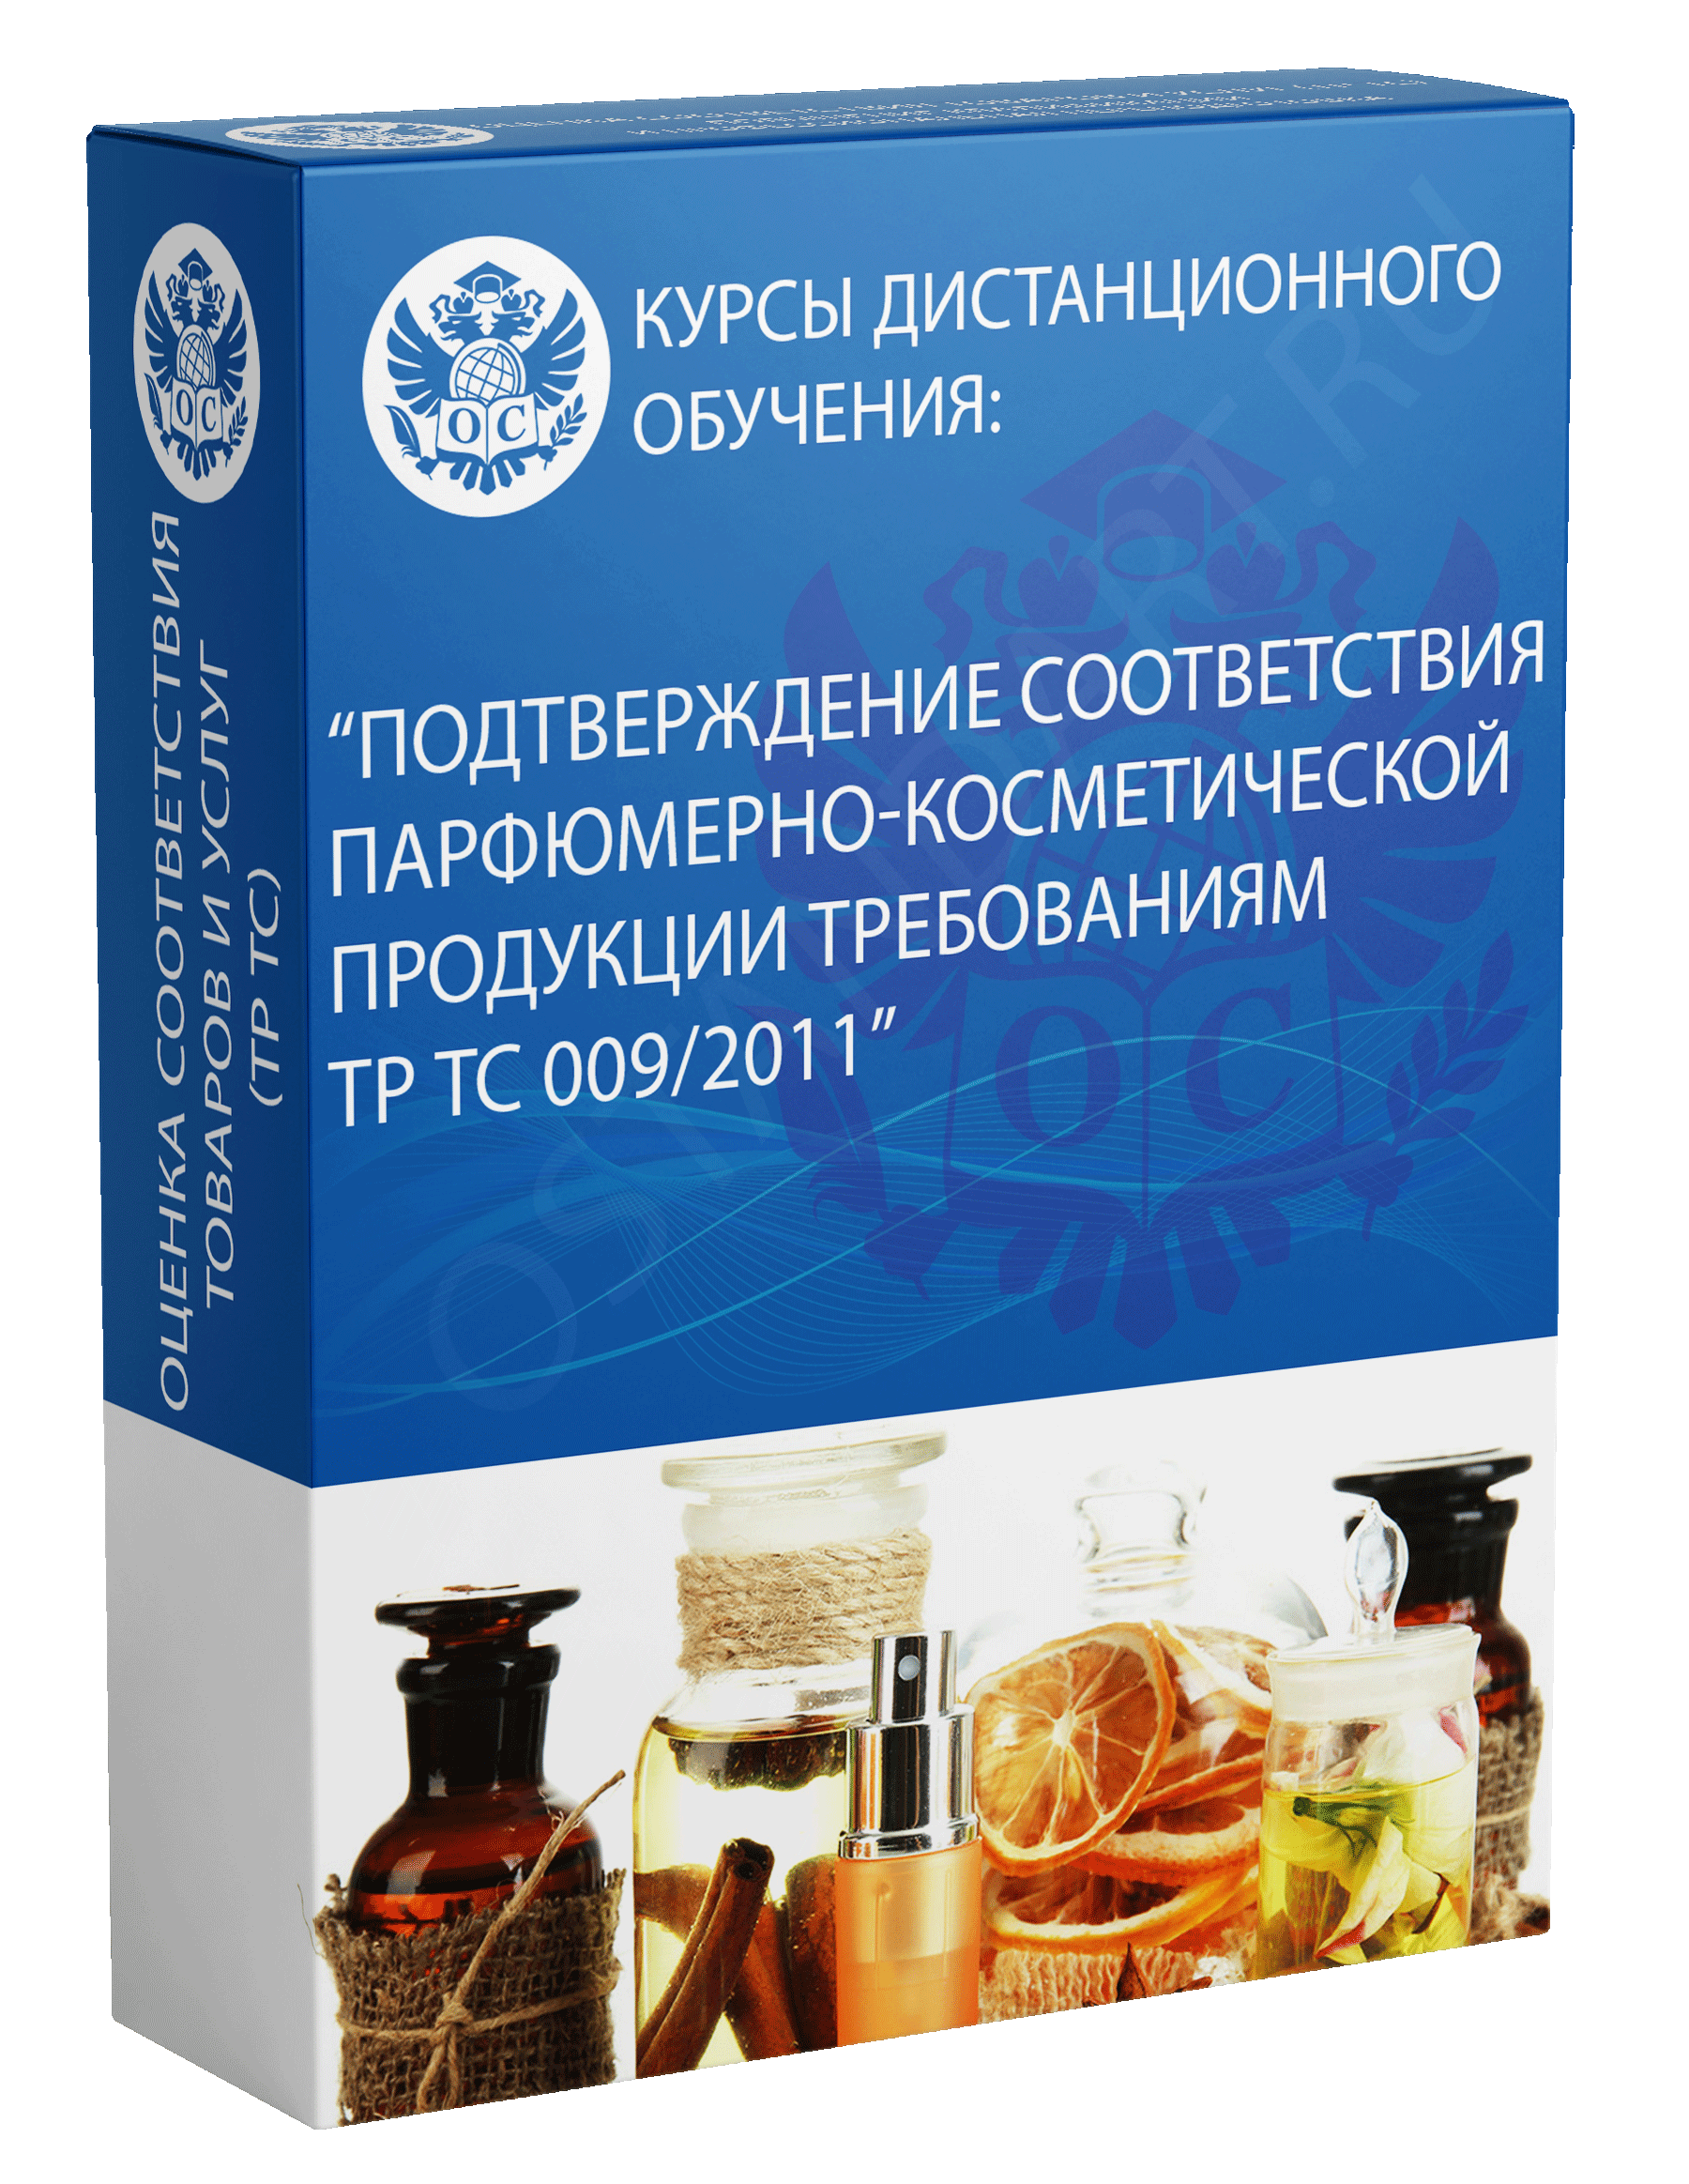 Подтверждение соответствия парфюмерно-косметической продукции требованиям ТР ТС 009/2011 курс обучения